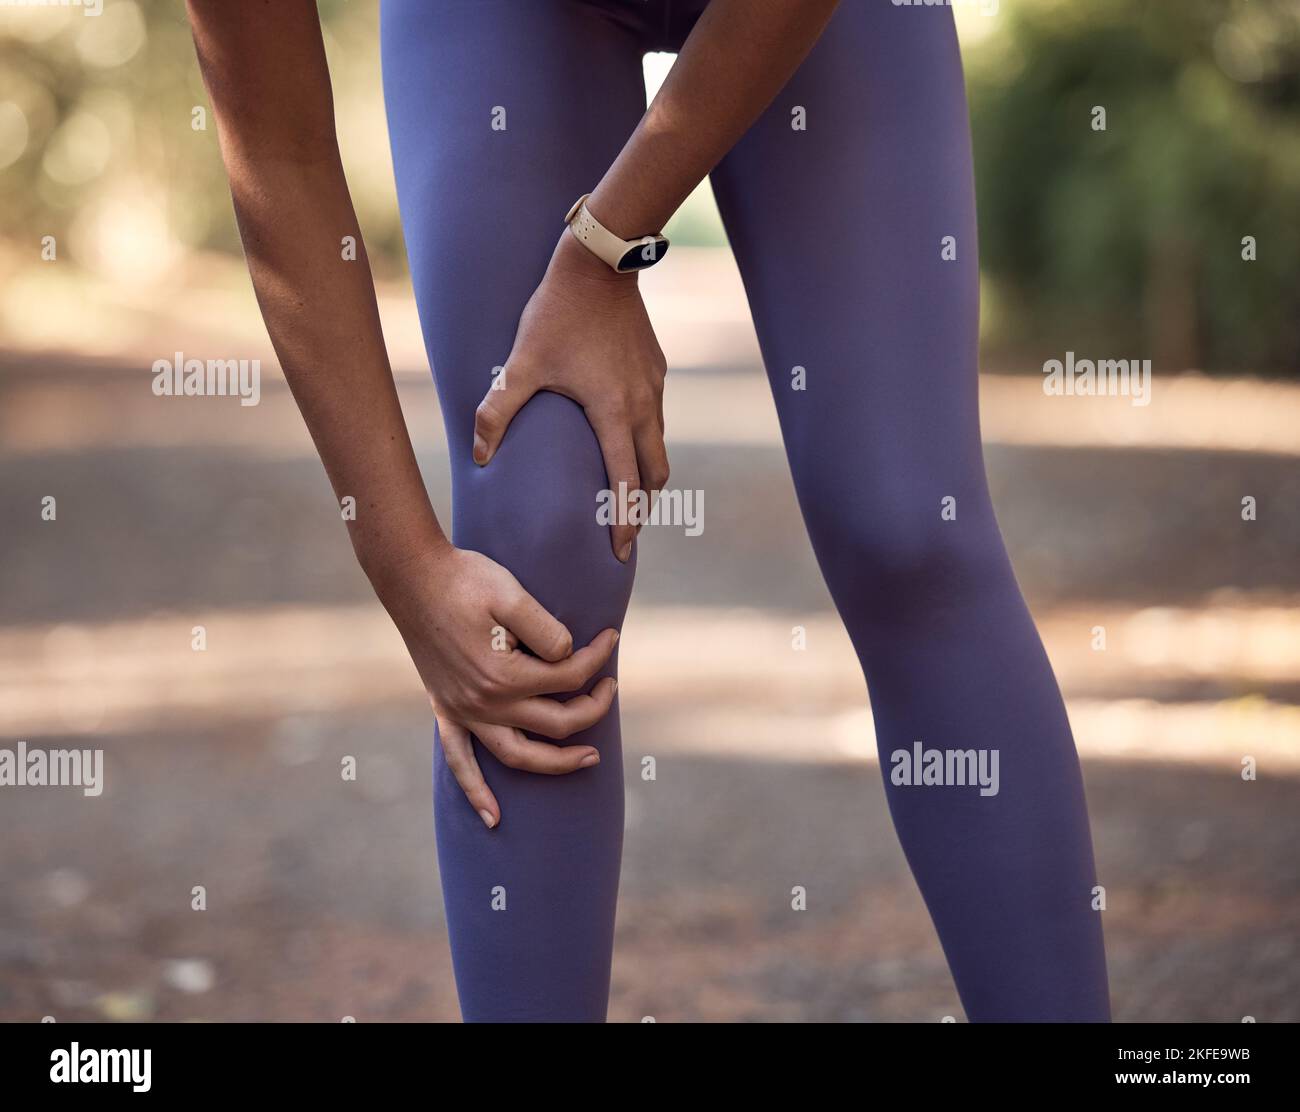 Dolore al ginocchio, lesione e incidente di una donna che si allena per una maratona, una corsa o una competizione in natura. Spolgono le ossa, la gamba ferita e il muscolo gonfio Foto Stock